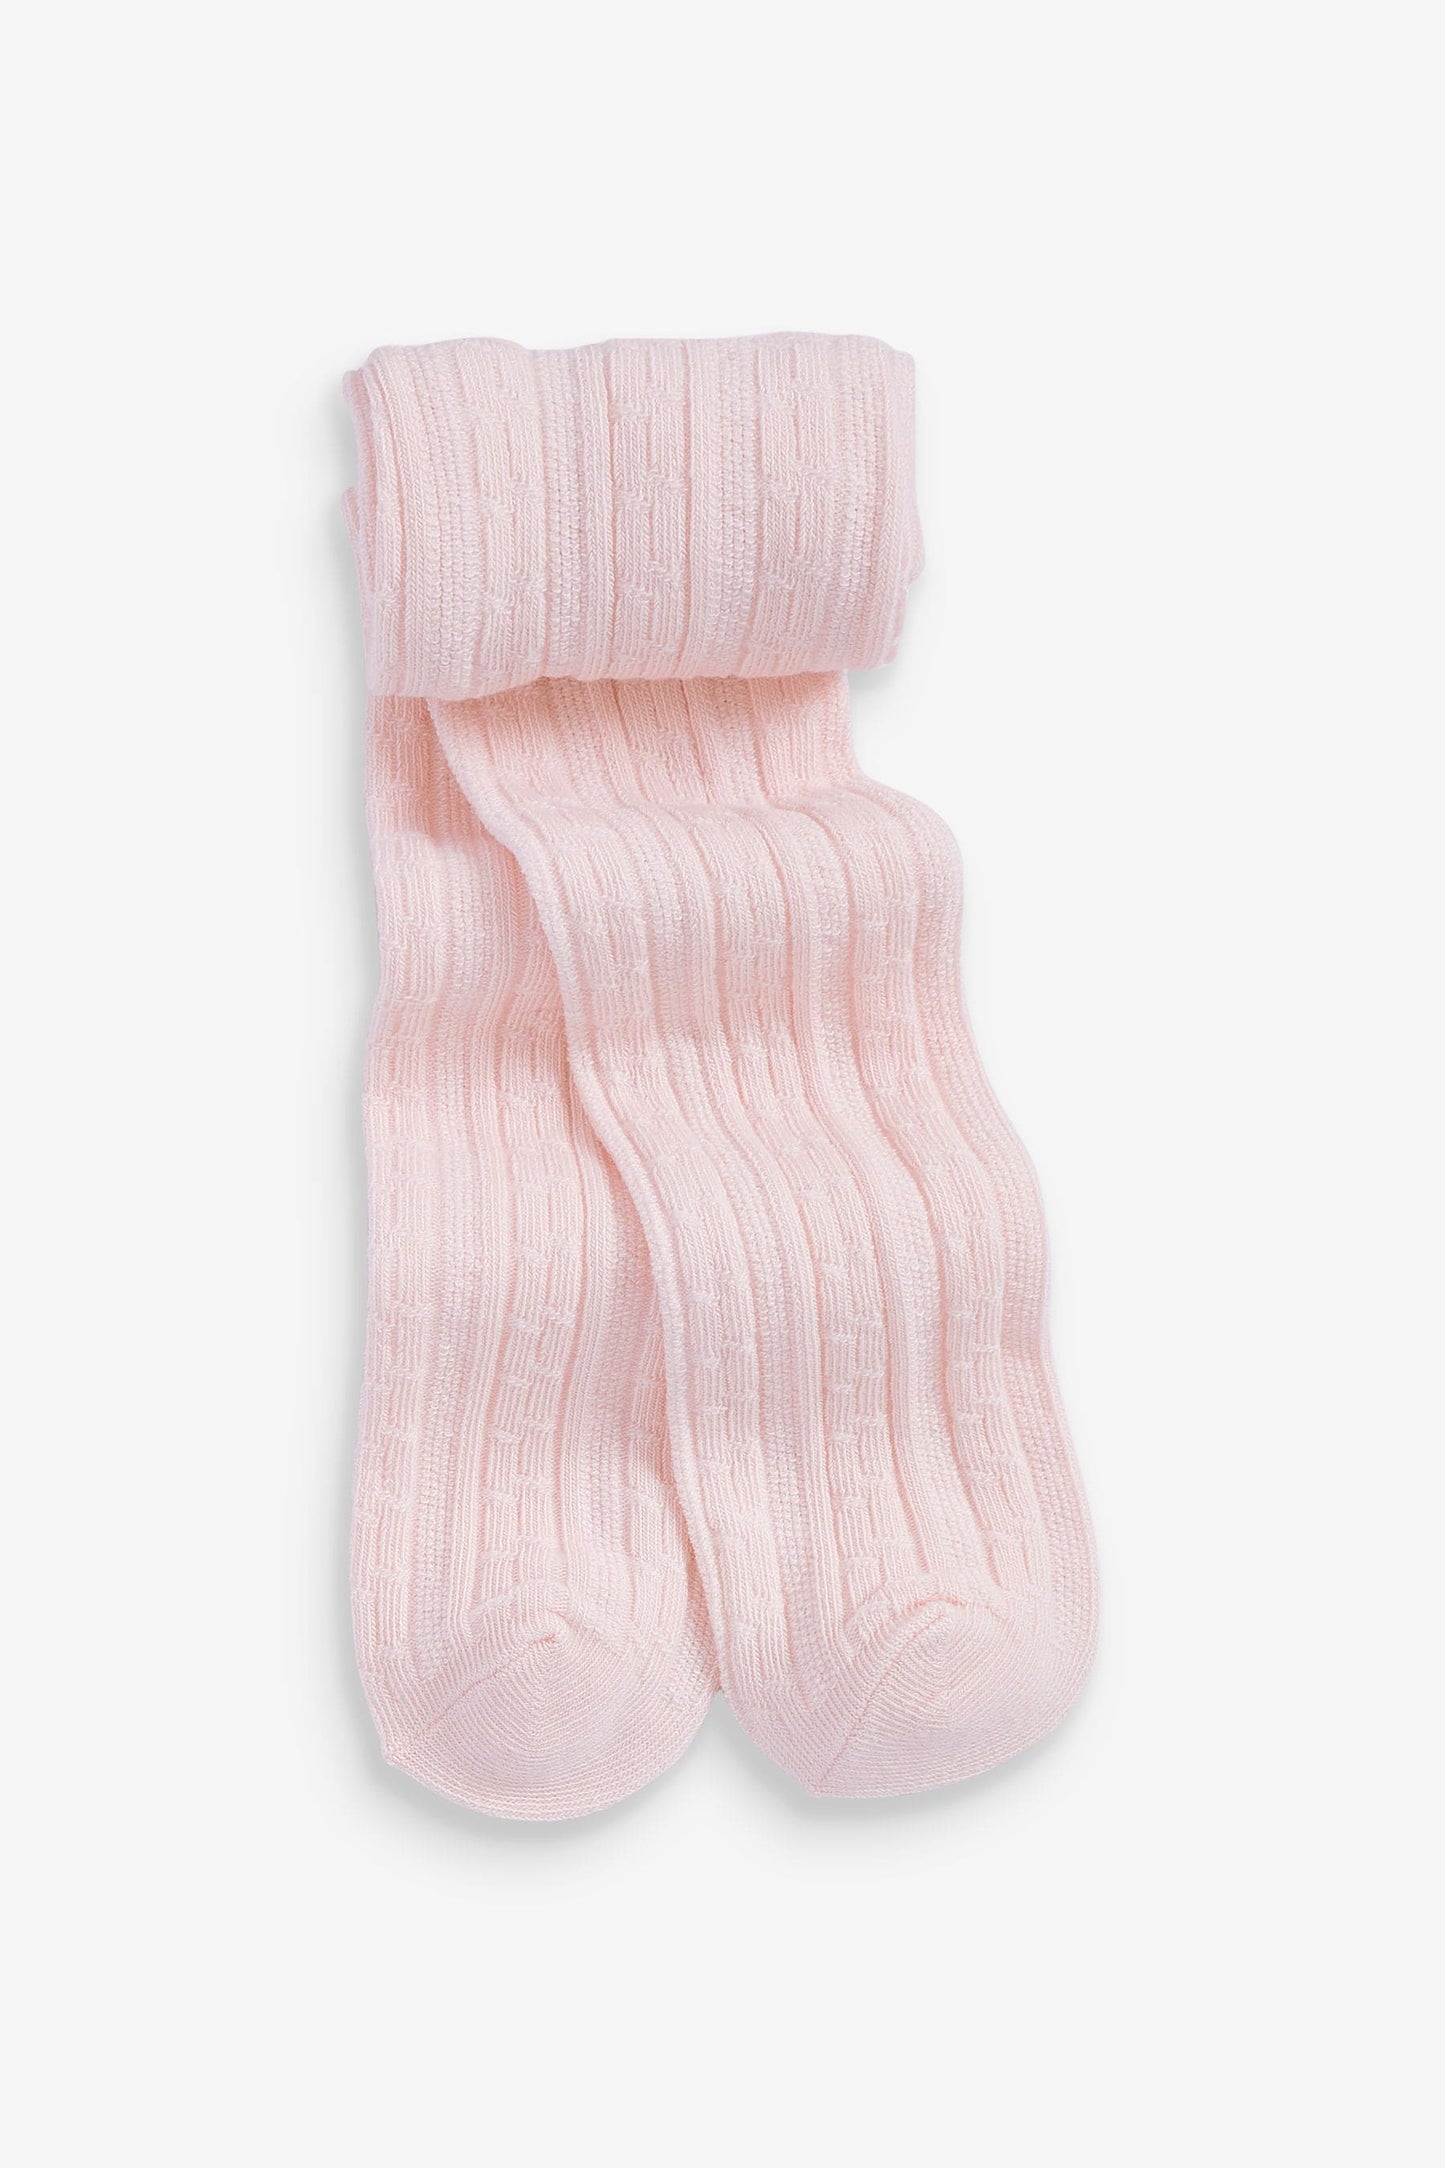 |BabyGirl| Calça Collants - Kit com 3 peças - Rosa/Creme (0meses-2anos)